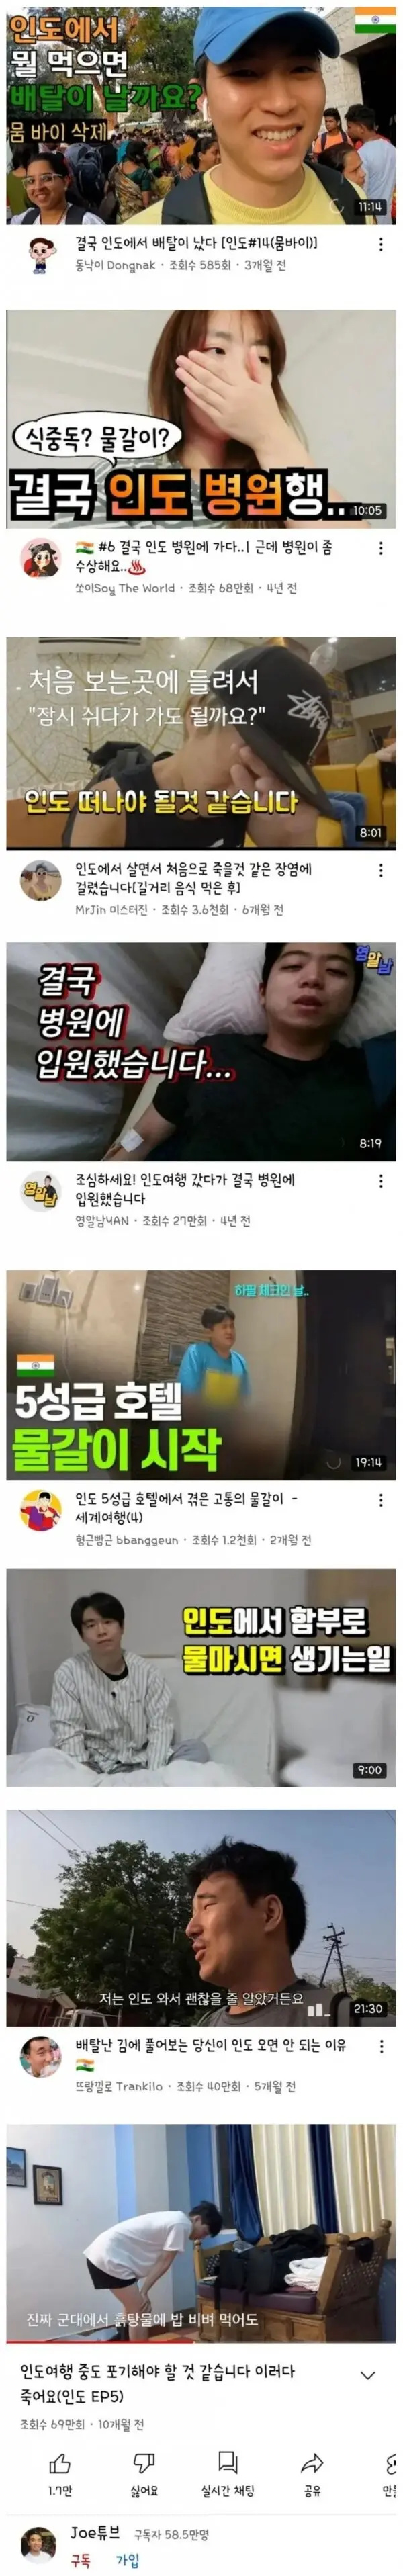 한국인들의 인도여행 후기.jpg